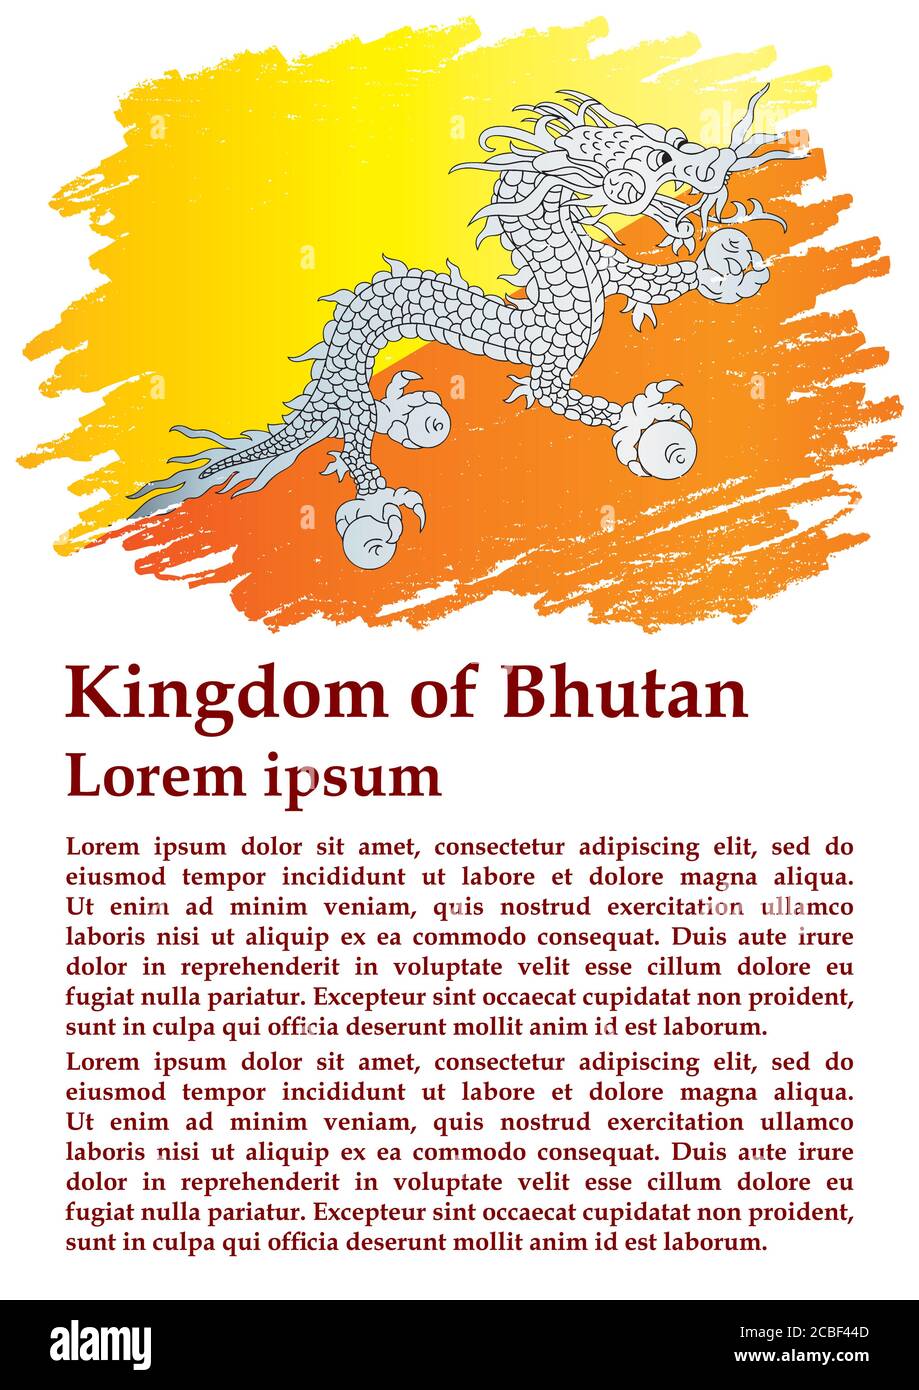 Drapeau du Bhoutan, Royaume du Bhoutan. Modèle pour la conception des prix, un document officiel avec le drapeau du Bhoutan. Illustration de Vecteur